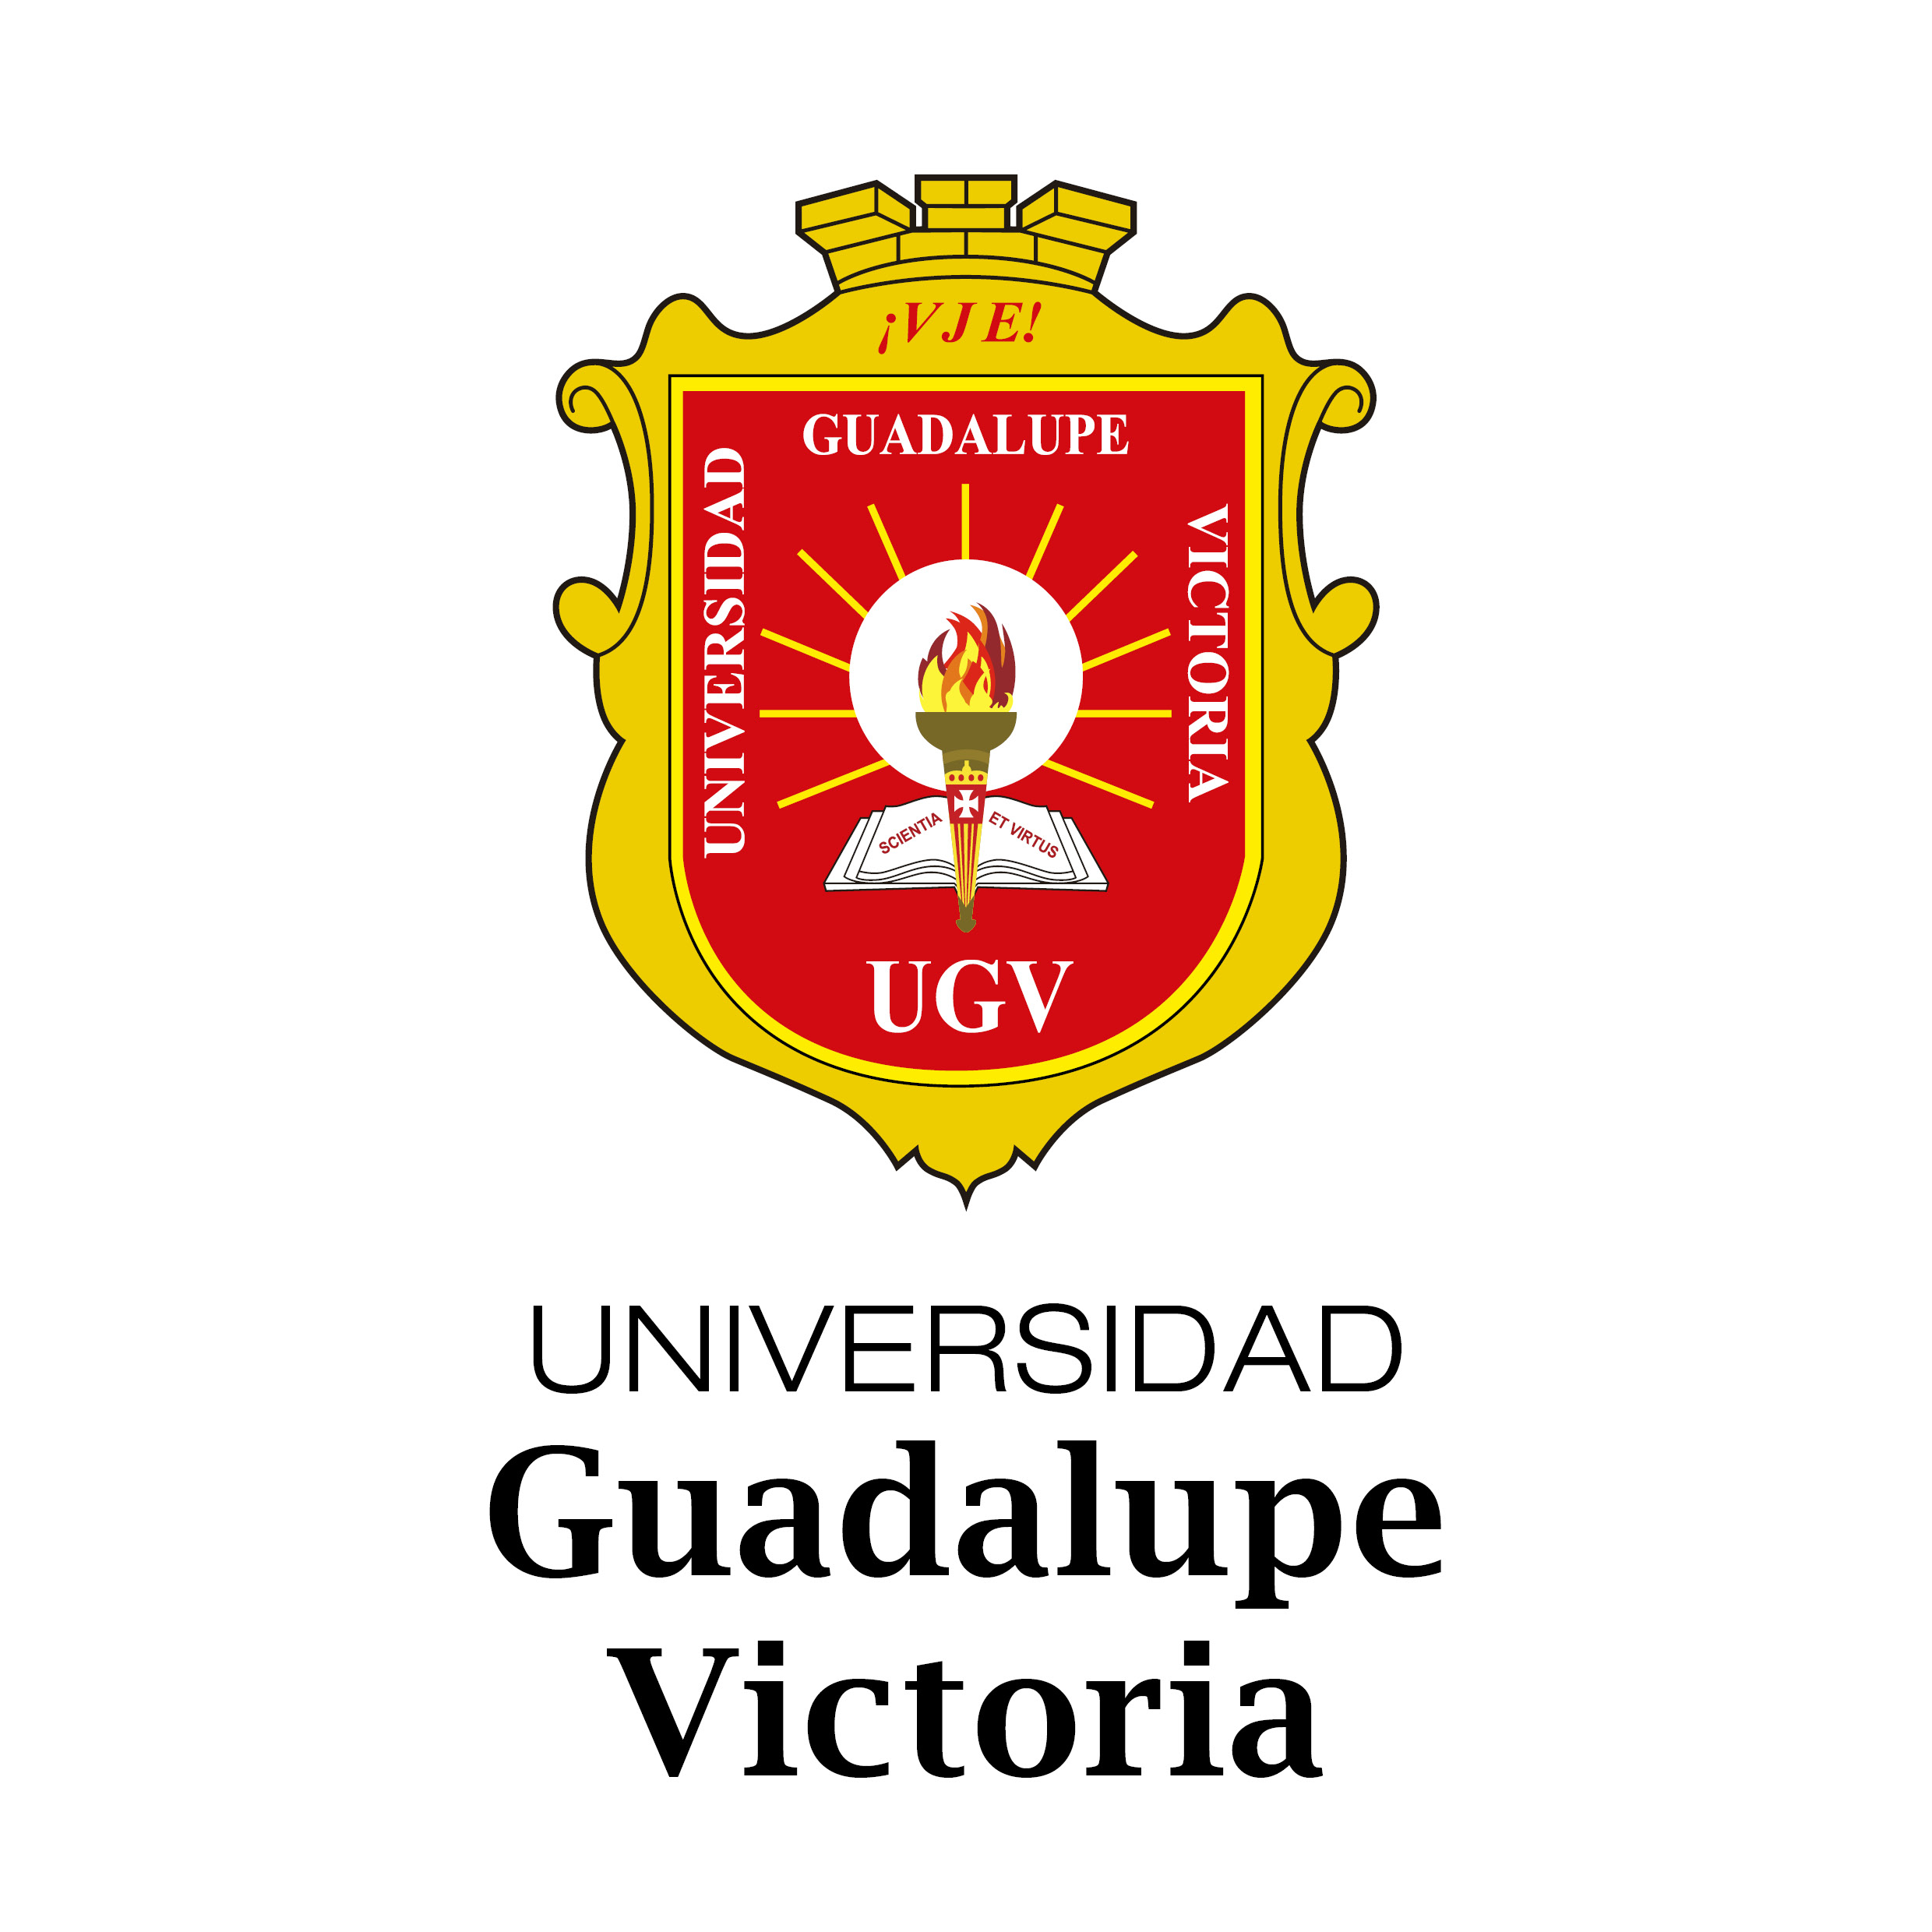 UNIVERSIDAD GUADALUPE VICTORIA